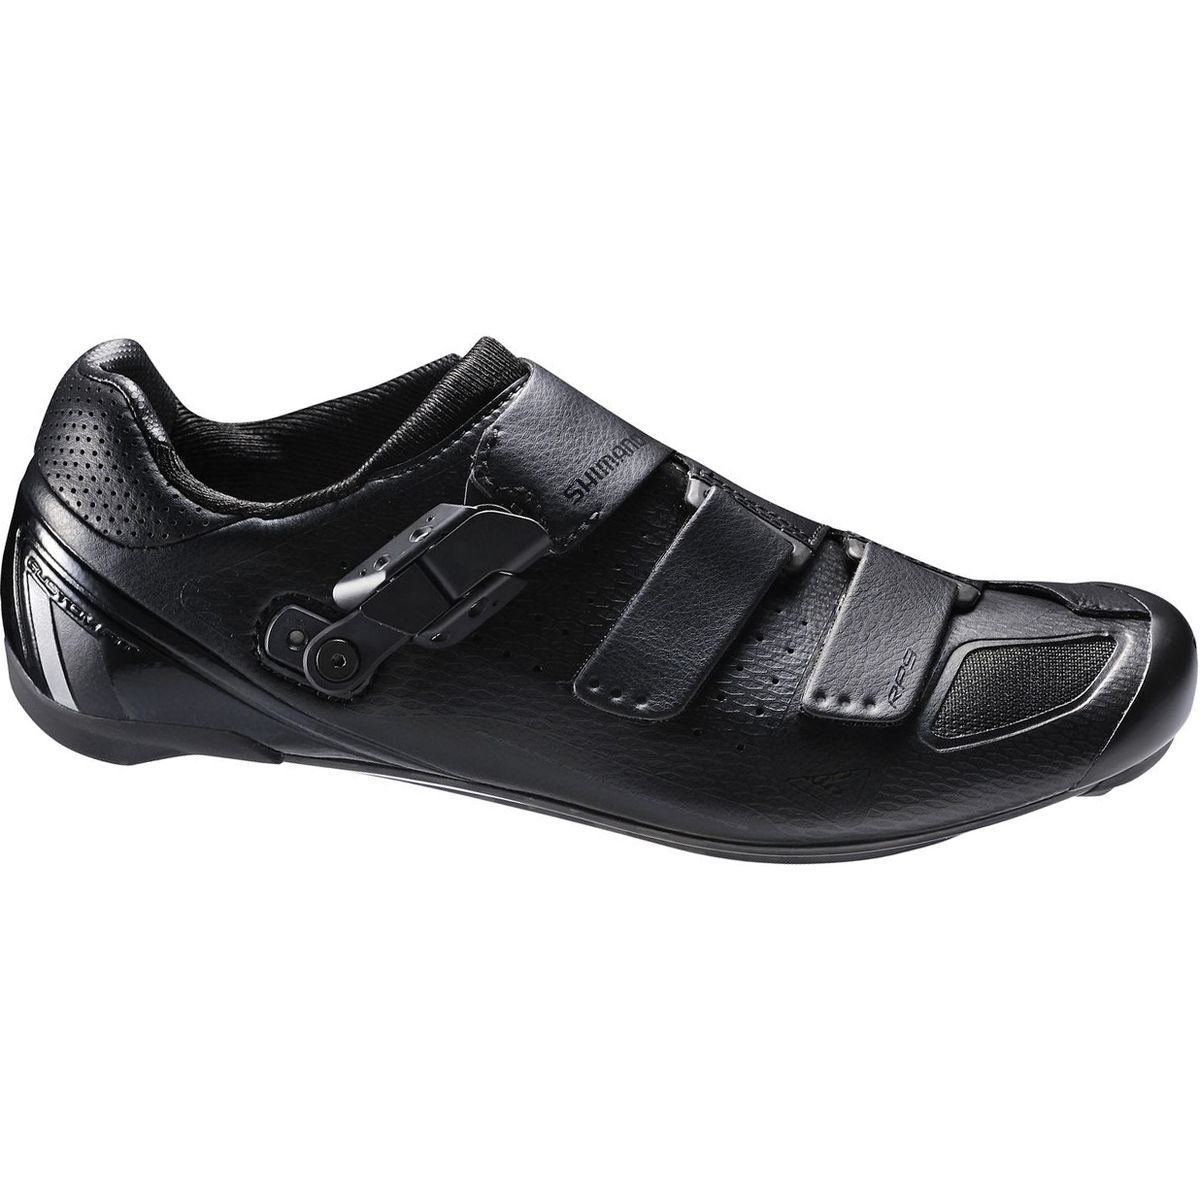 Shimano SH RP9 Cycling Shoes Wide Men's